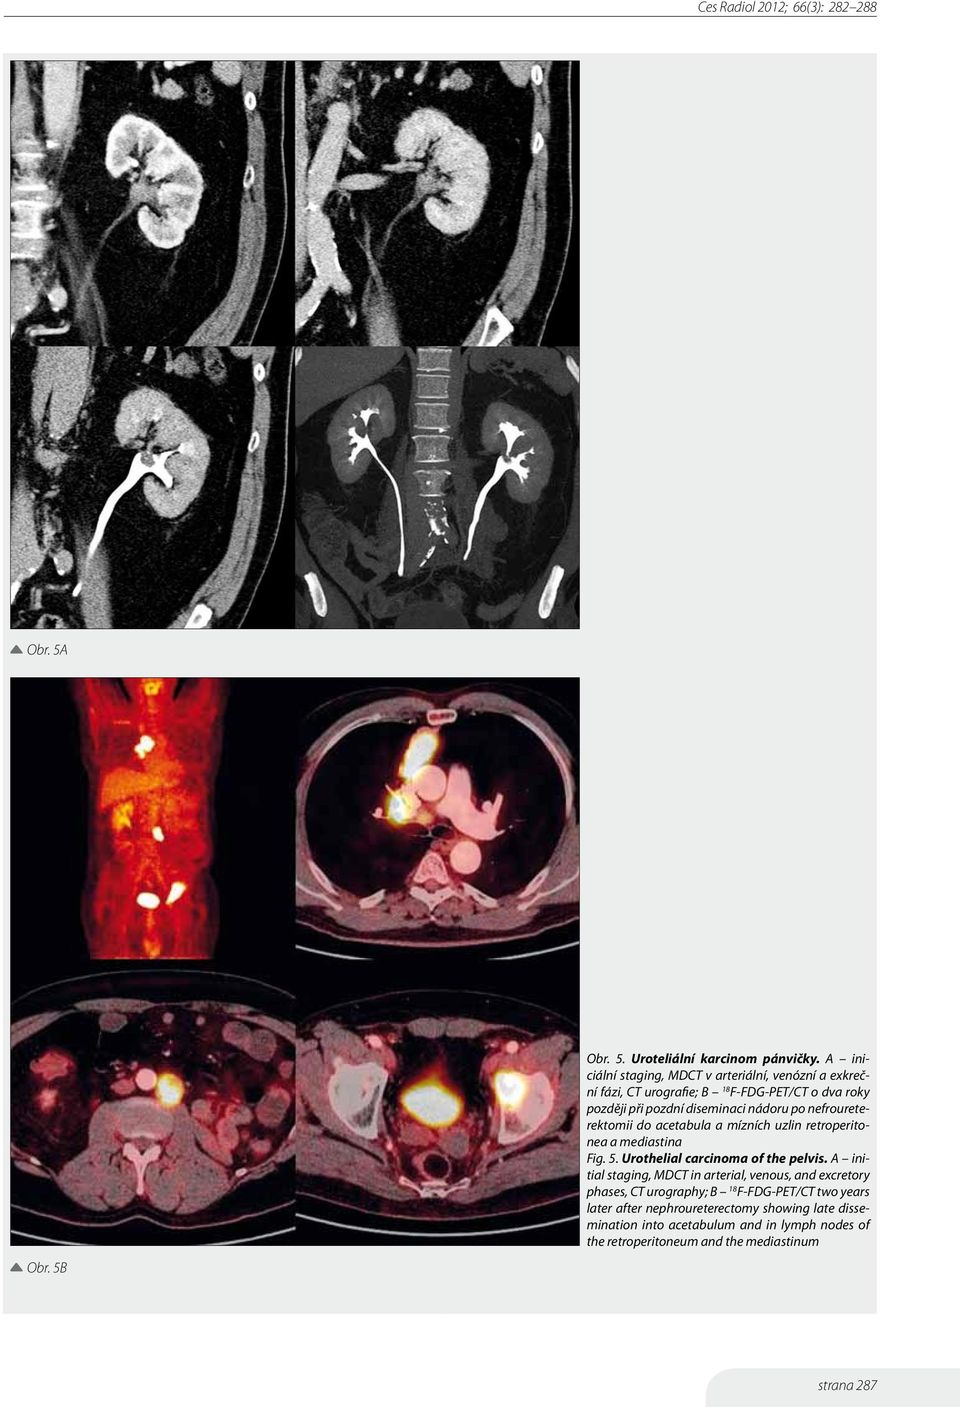 po nefroureterektomii do acetabula a mízních uzlin retroperitonea a mediastina Fig. 5. Urothelial carcinoma of the pelvis.